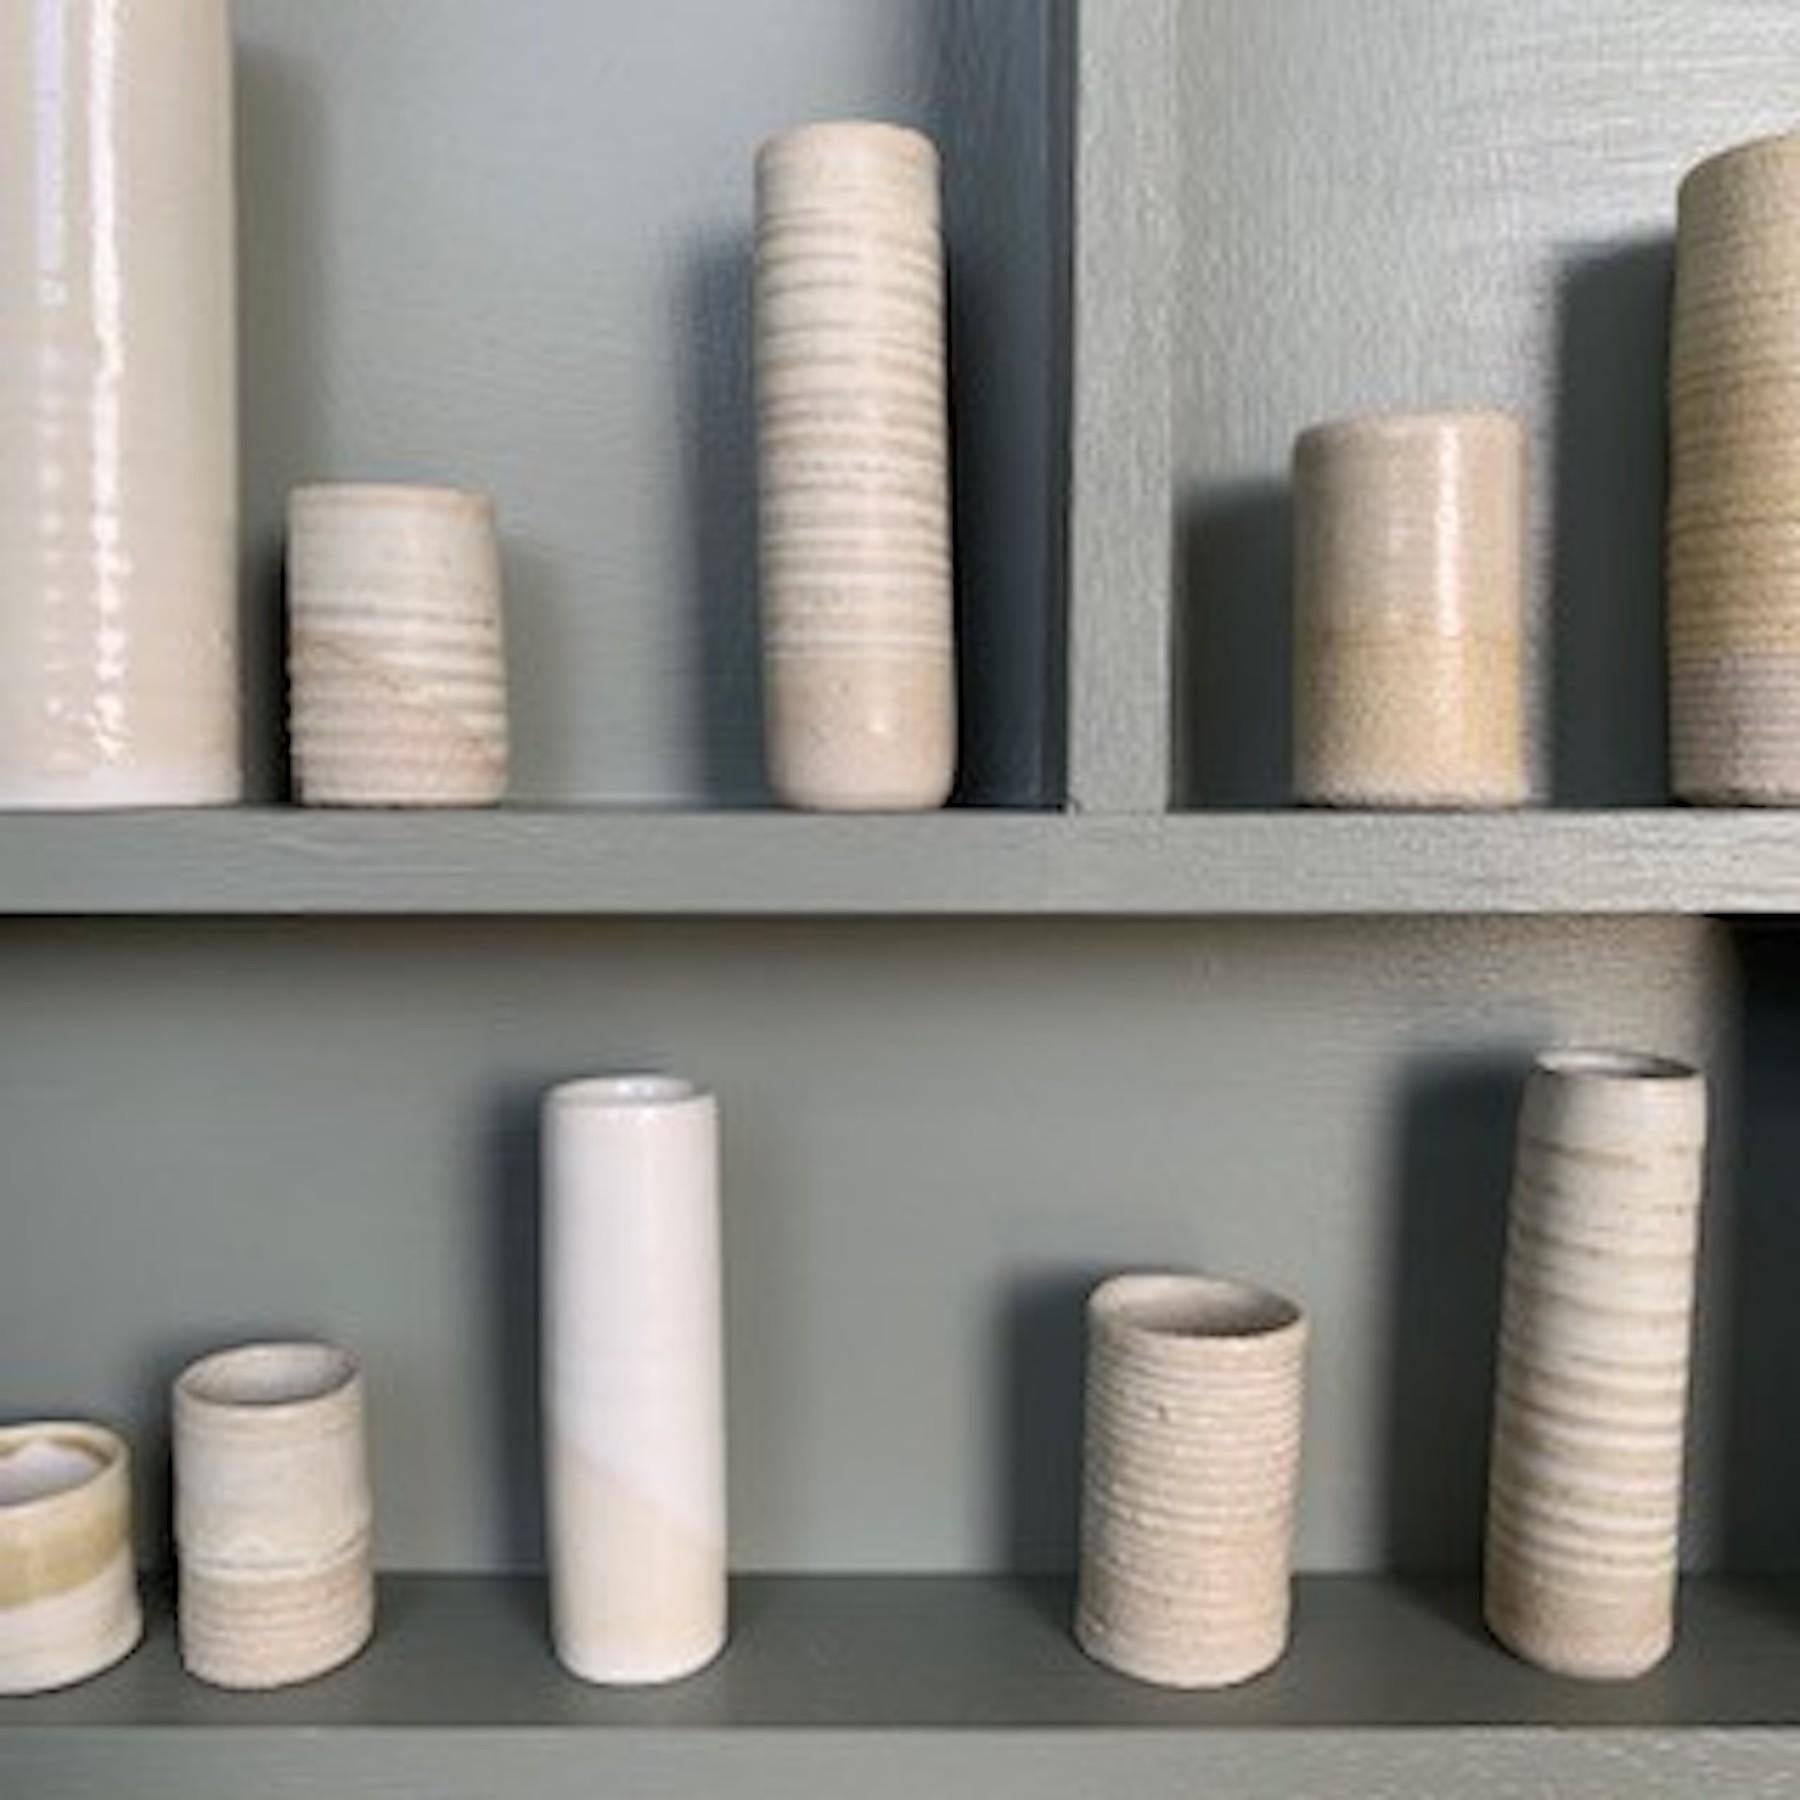 Cadre de pot en céramique et porcelaine d'Emma Bell - Pièce d'installation.
Emma Bell déclare : 